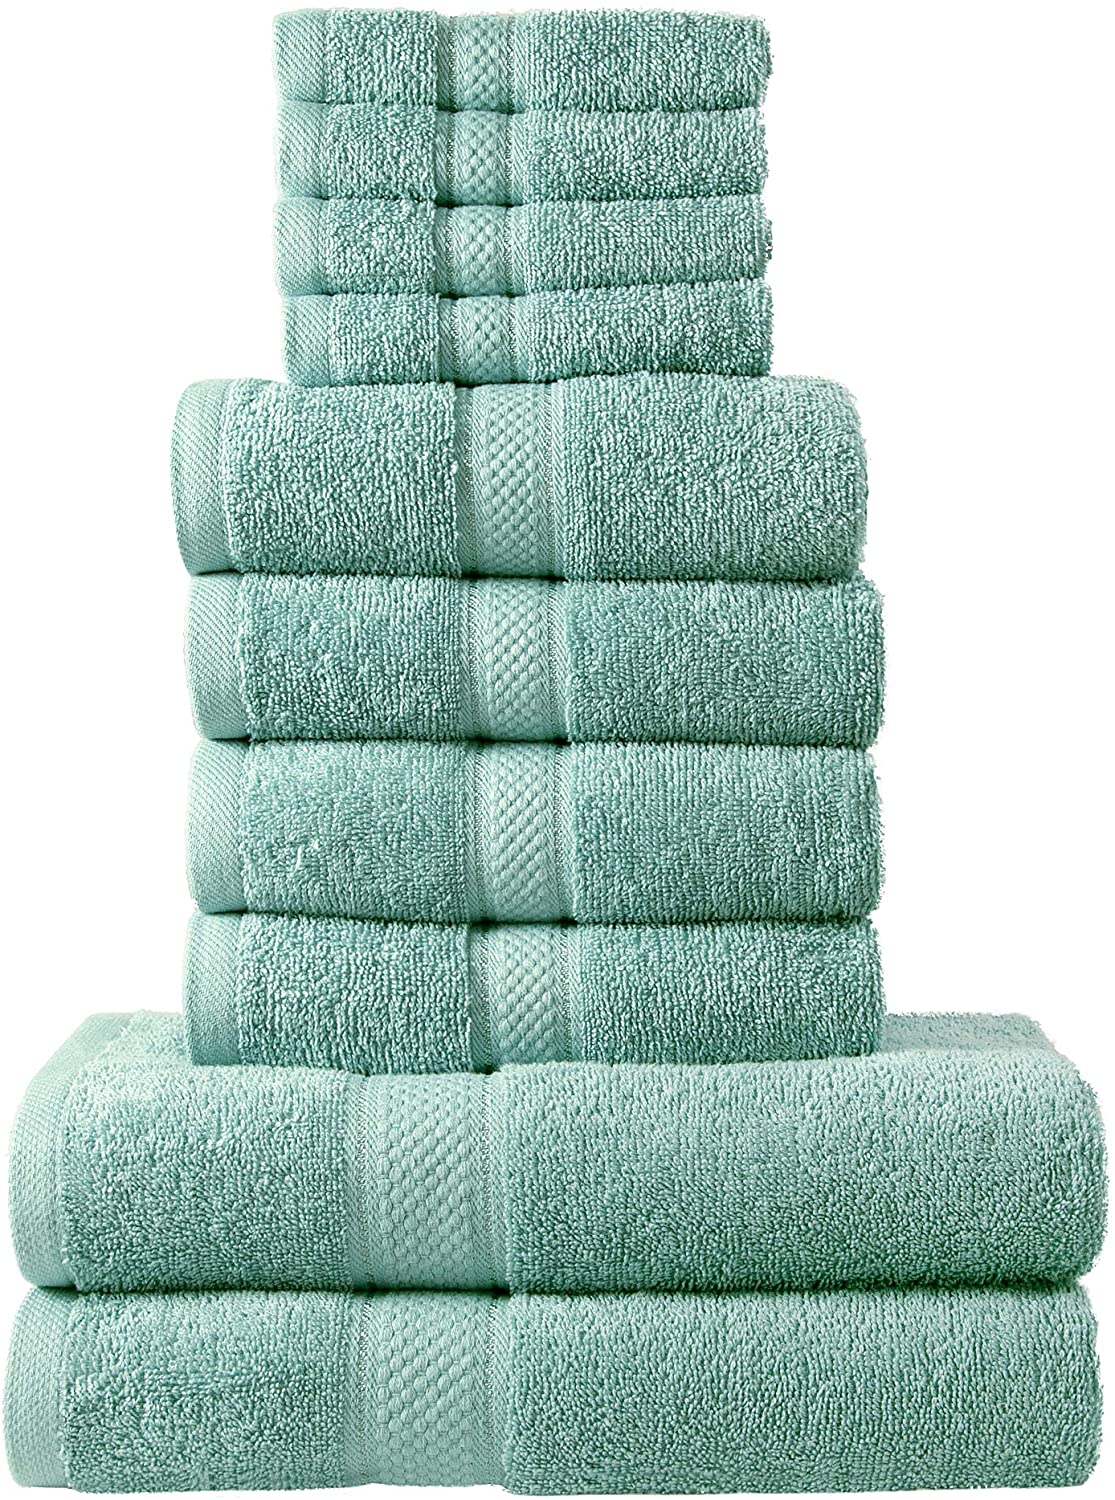 10 Pcs 100% Cotton Duck Egg Premium Towel Bale Set Plain